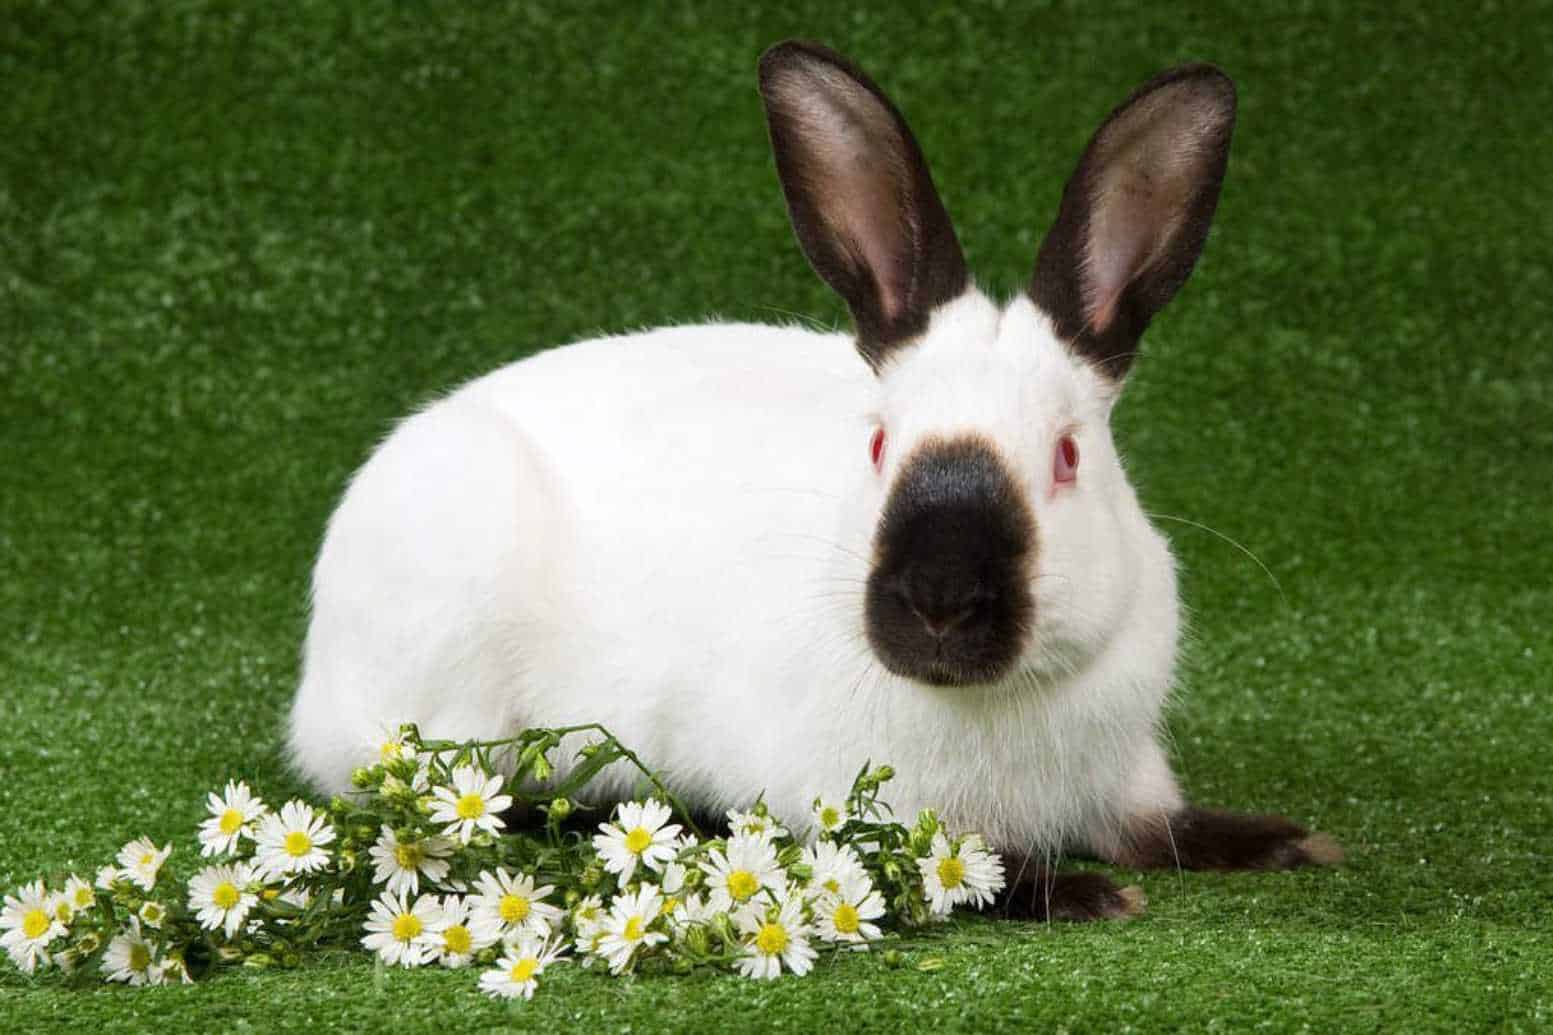 lilac himalayan rabbit